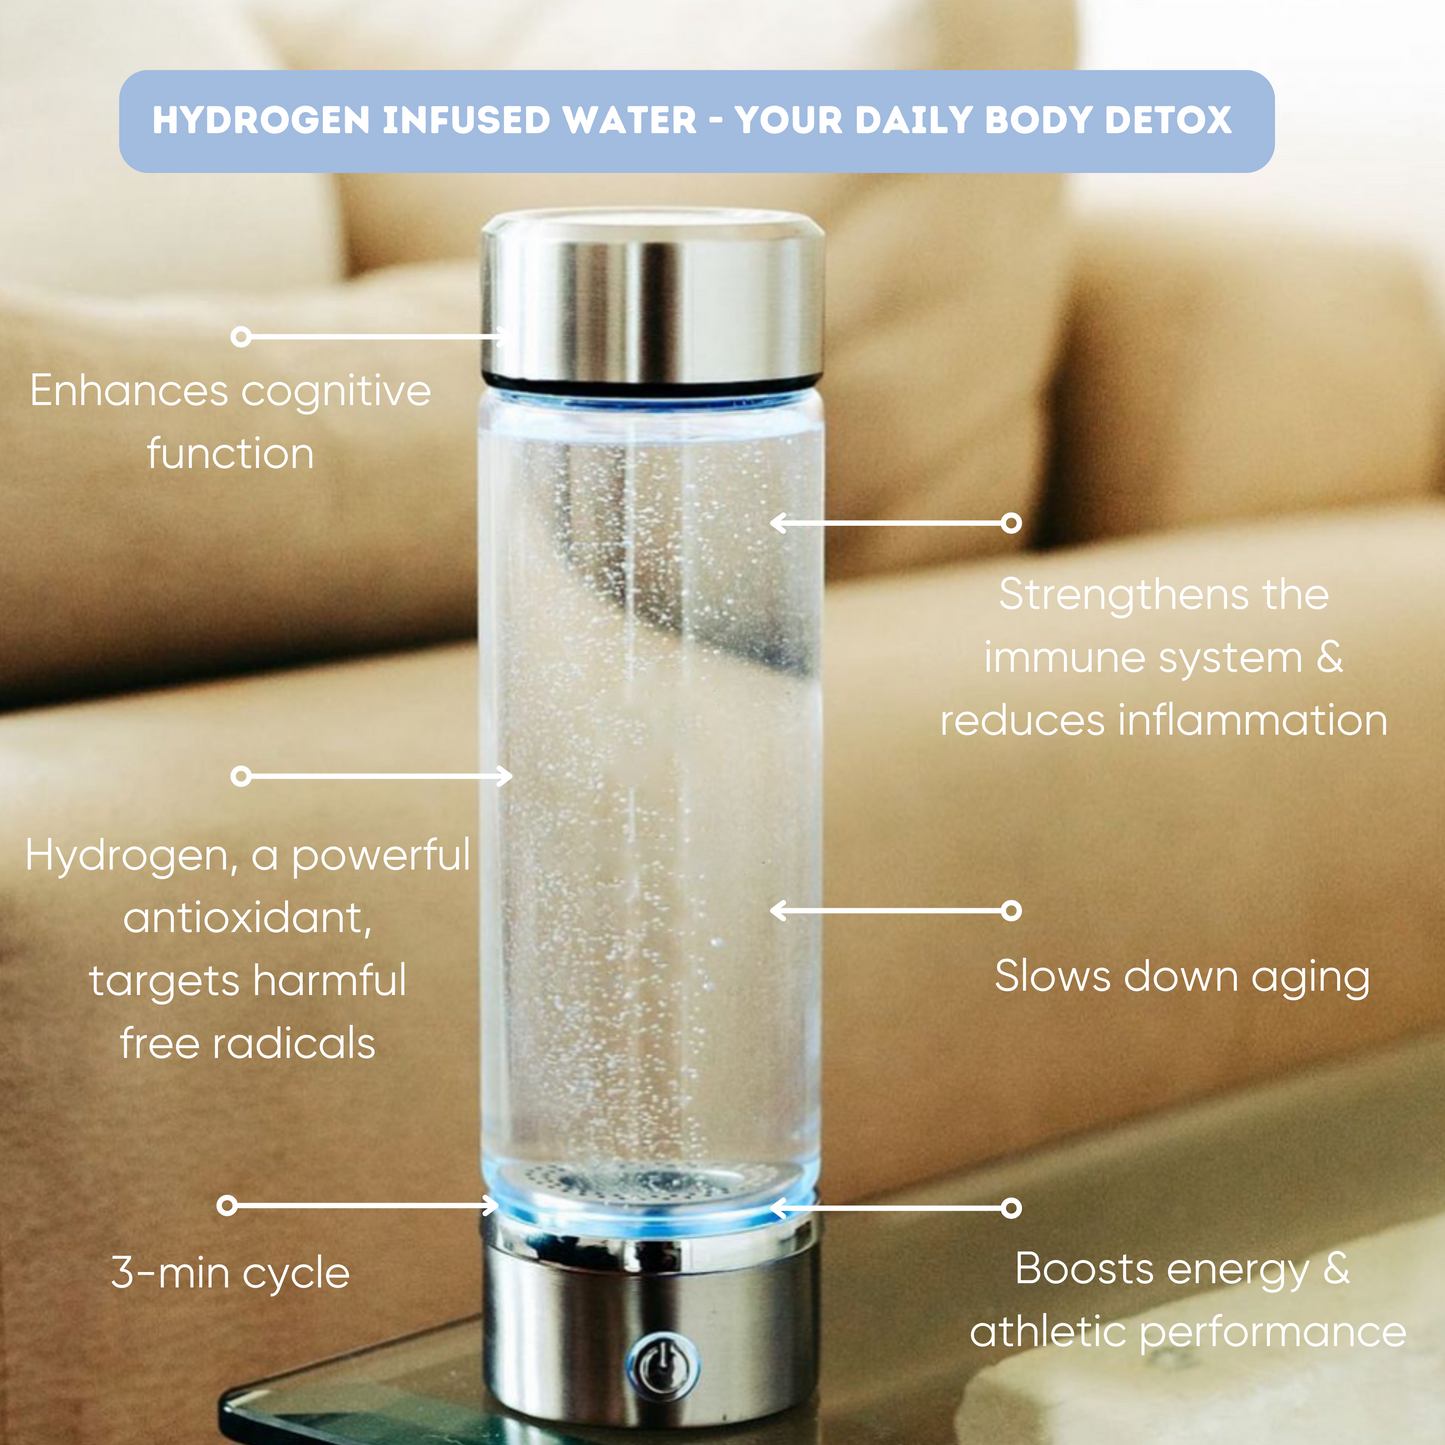 acuflow - hydrogen water bottle